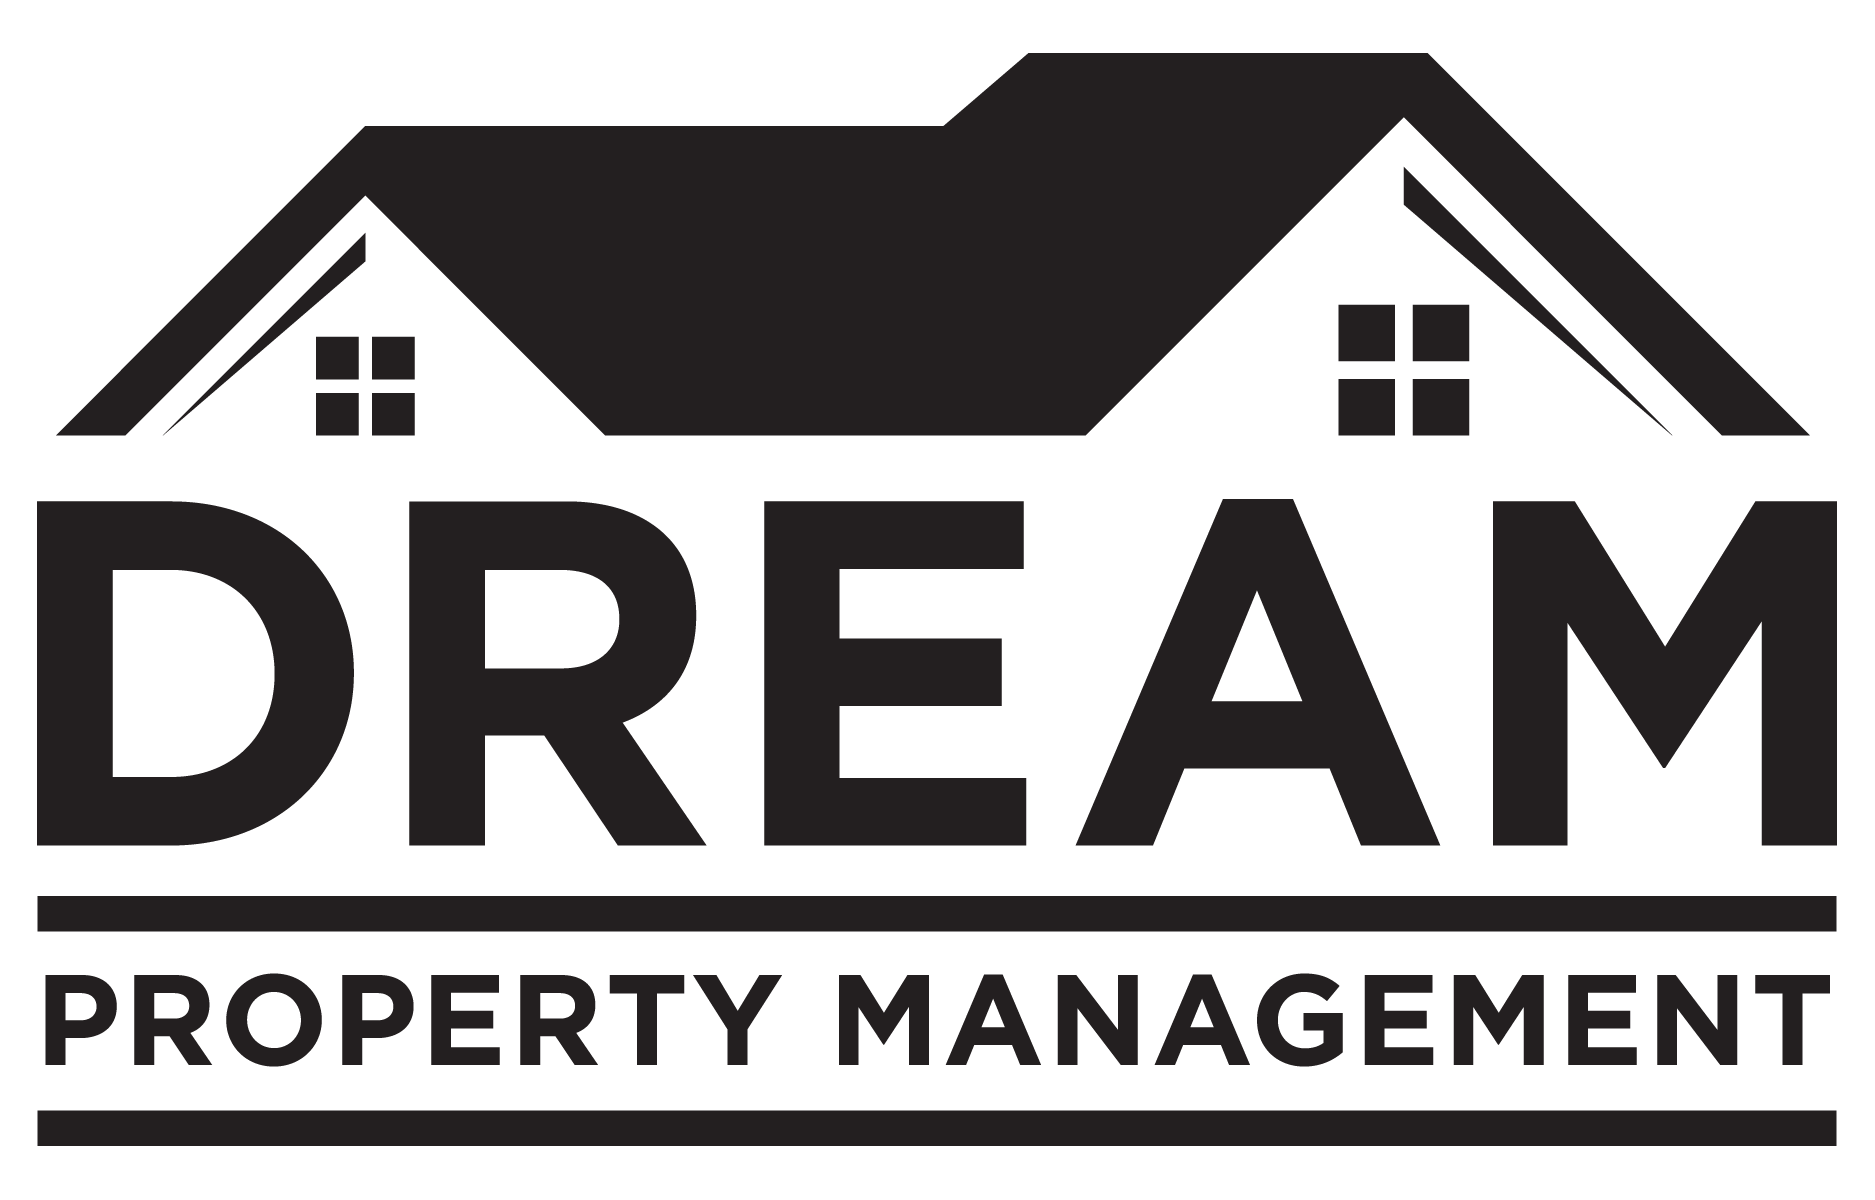 Dream Enterprise Property Management